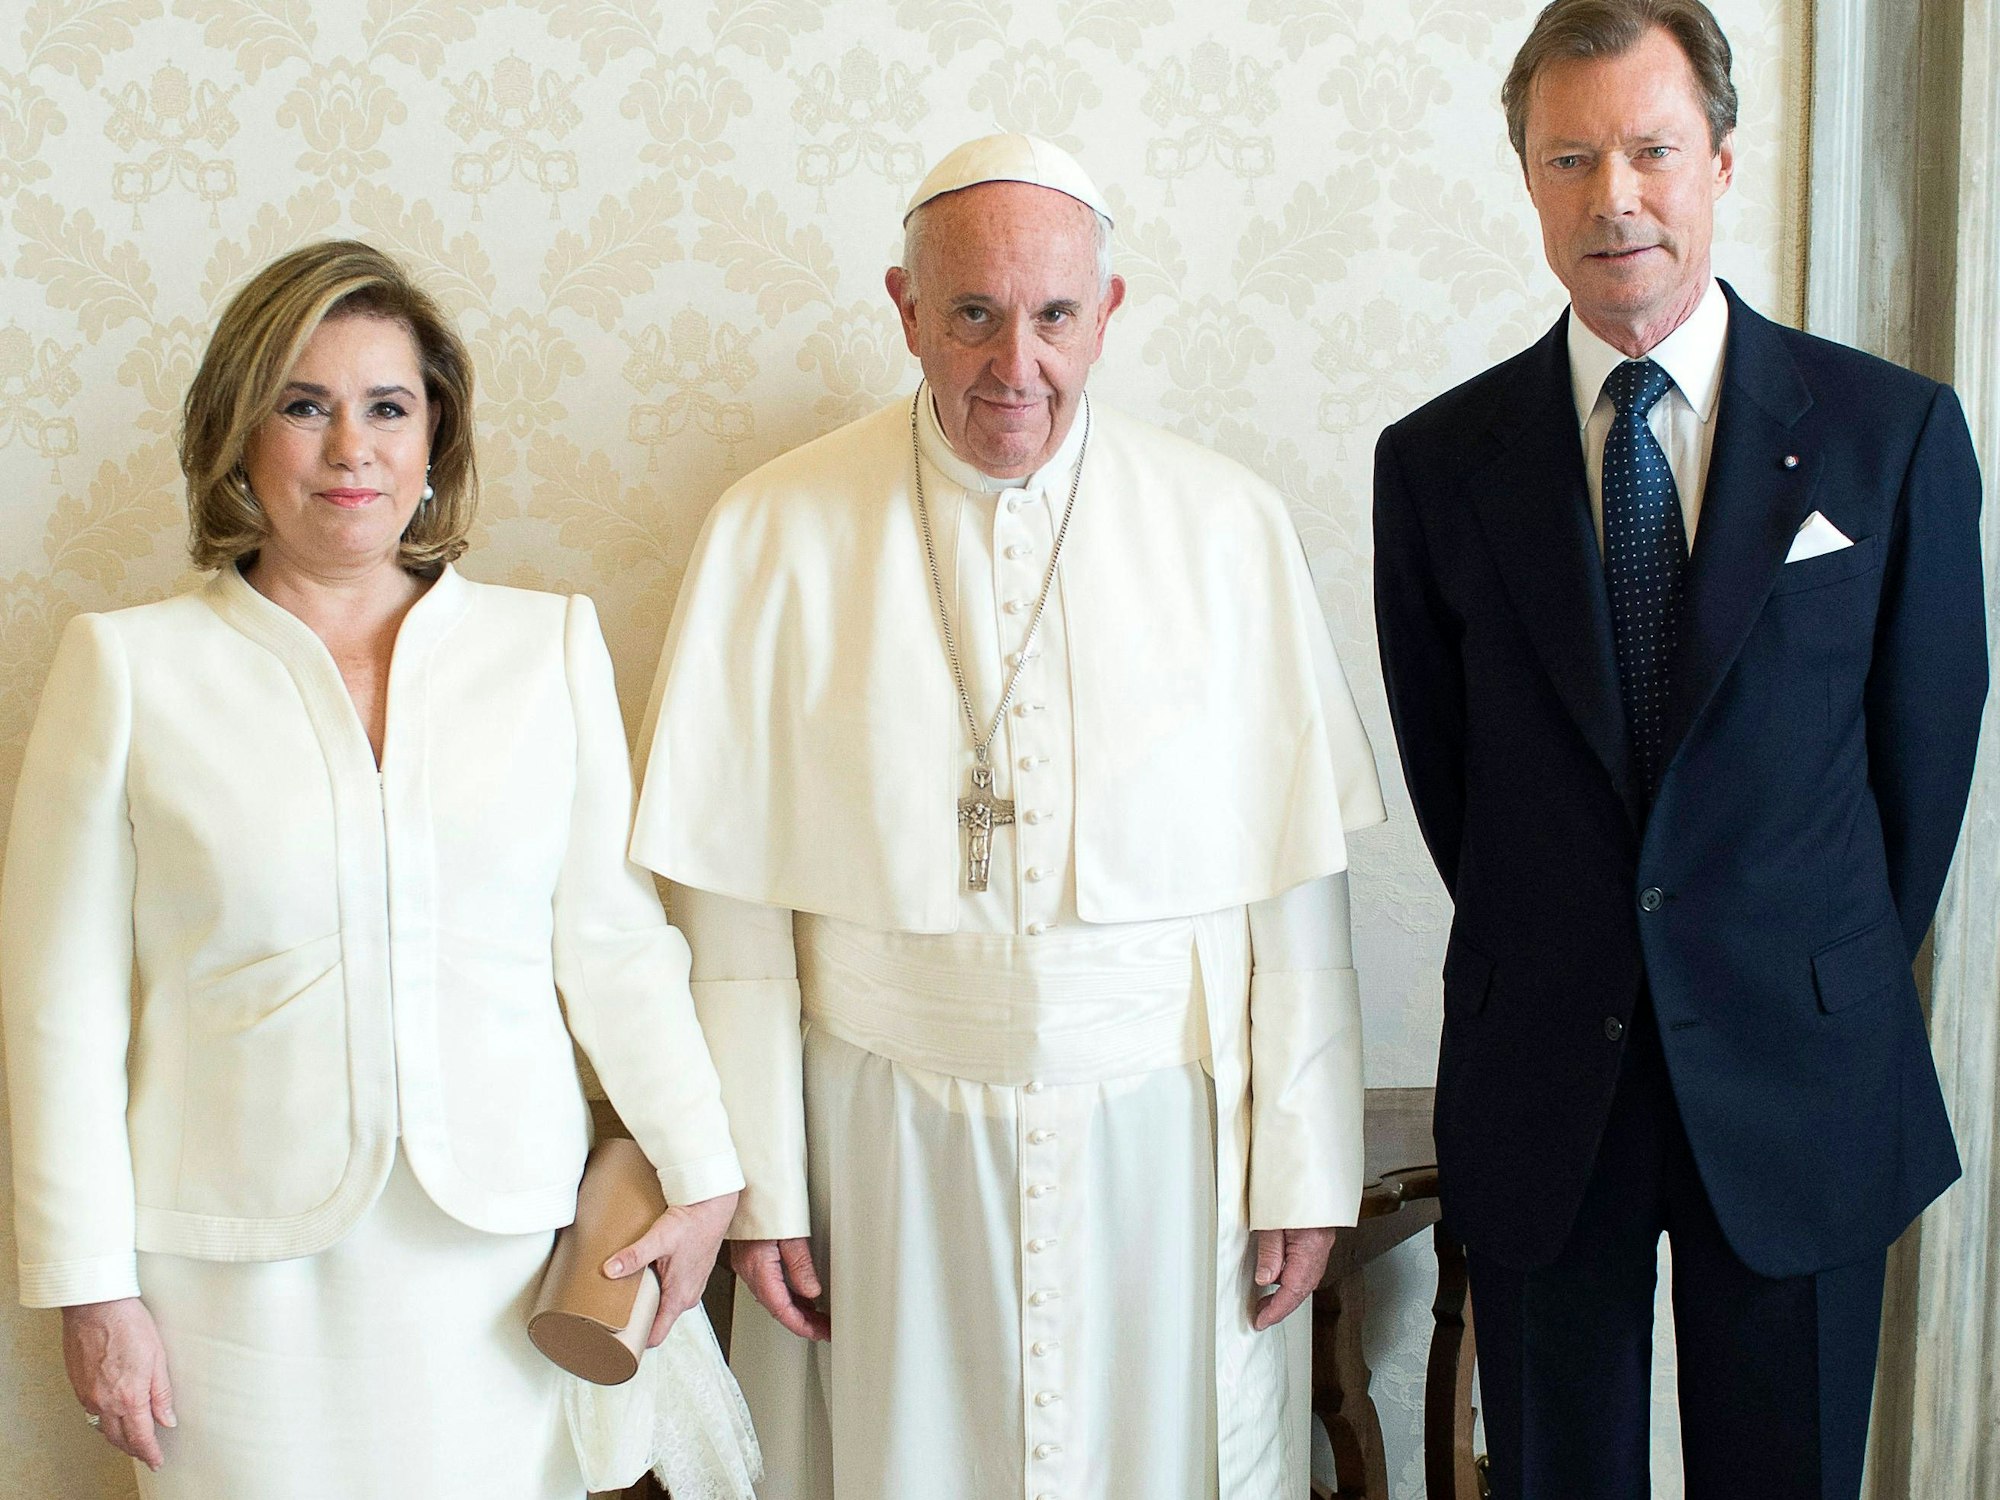 Die Großherzogin von Luxemburg, Maria Teresa, darf ebenfalls von dem „privilège du blanc“ Gebrauch machen, so wie hier bei einem Treffen mit dem Papst im Jahr 2016. Ihren weißen Schleier hält die Großherzogin auf diesem Foto in der linken Hand.